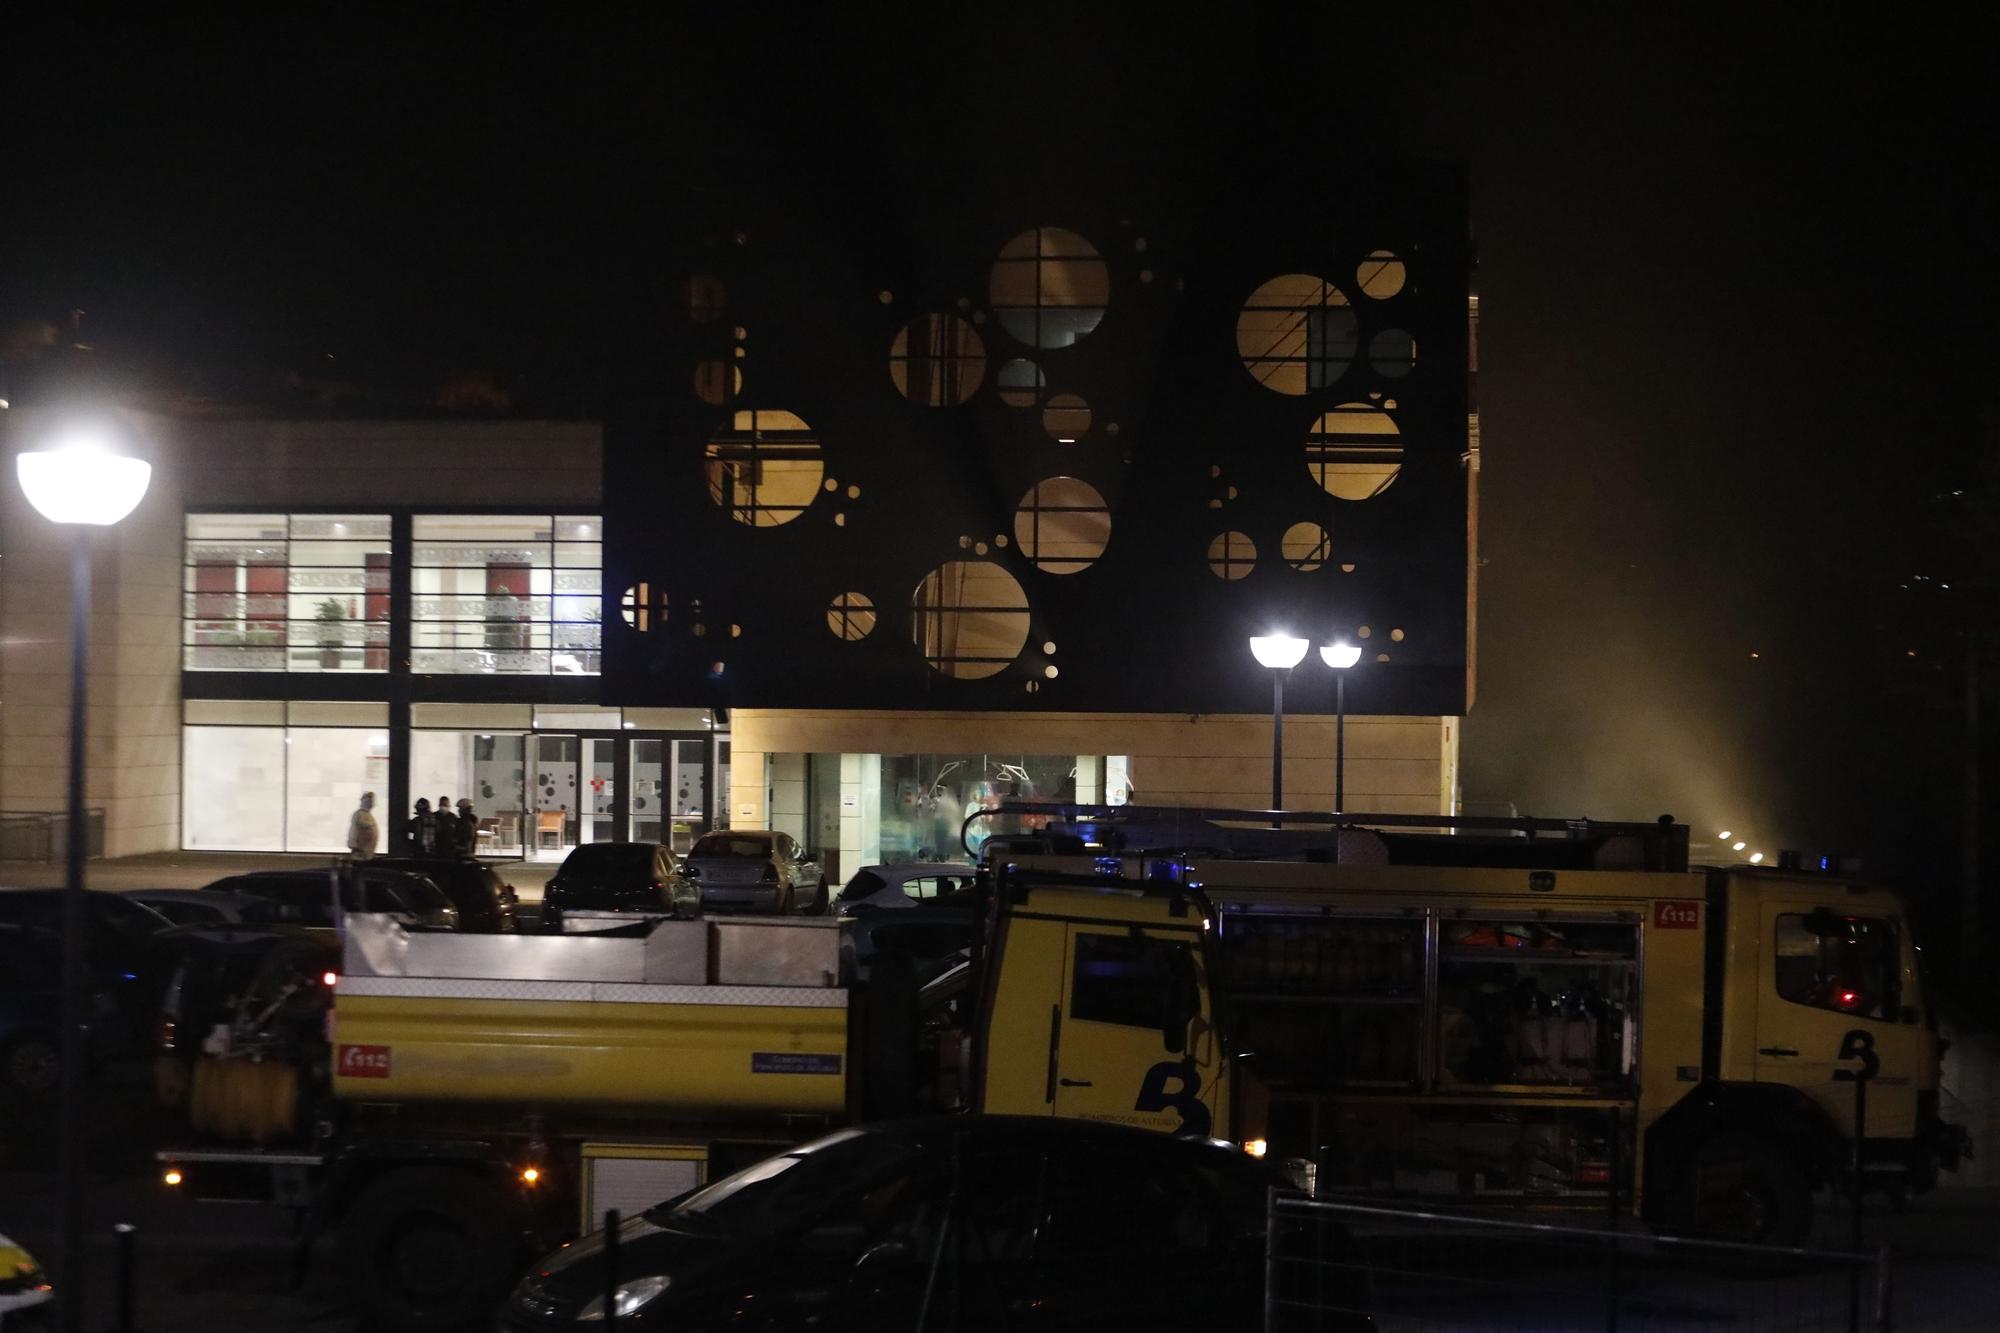 Un incendio obliga a desalojar a pacientes mayores con covid del centro de Barros